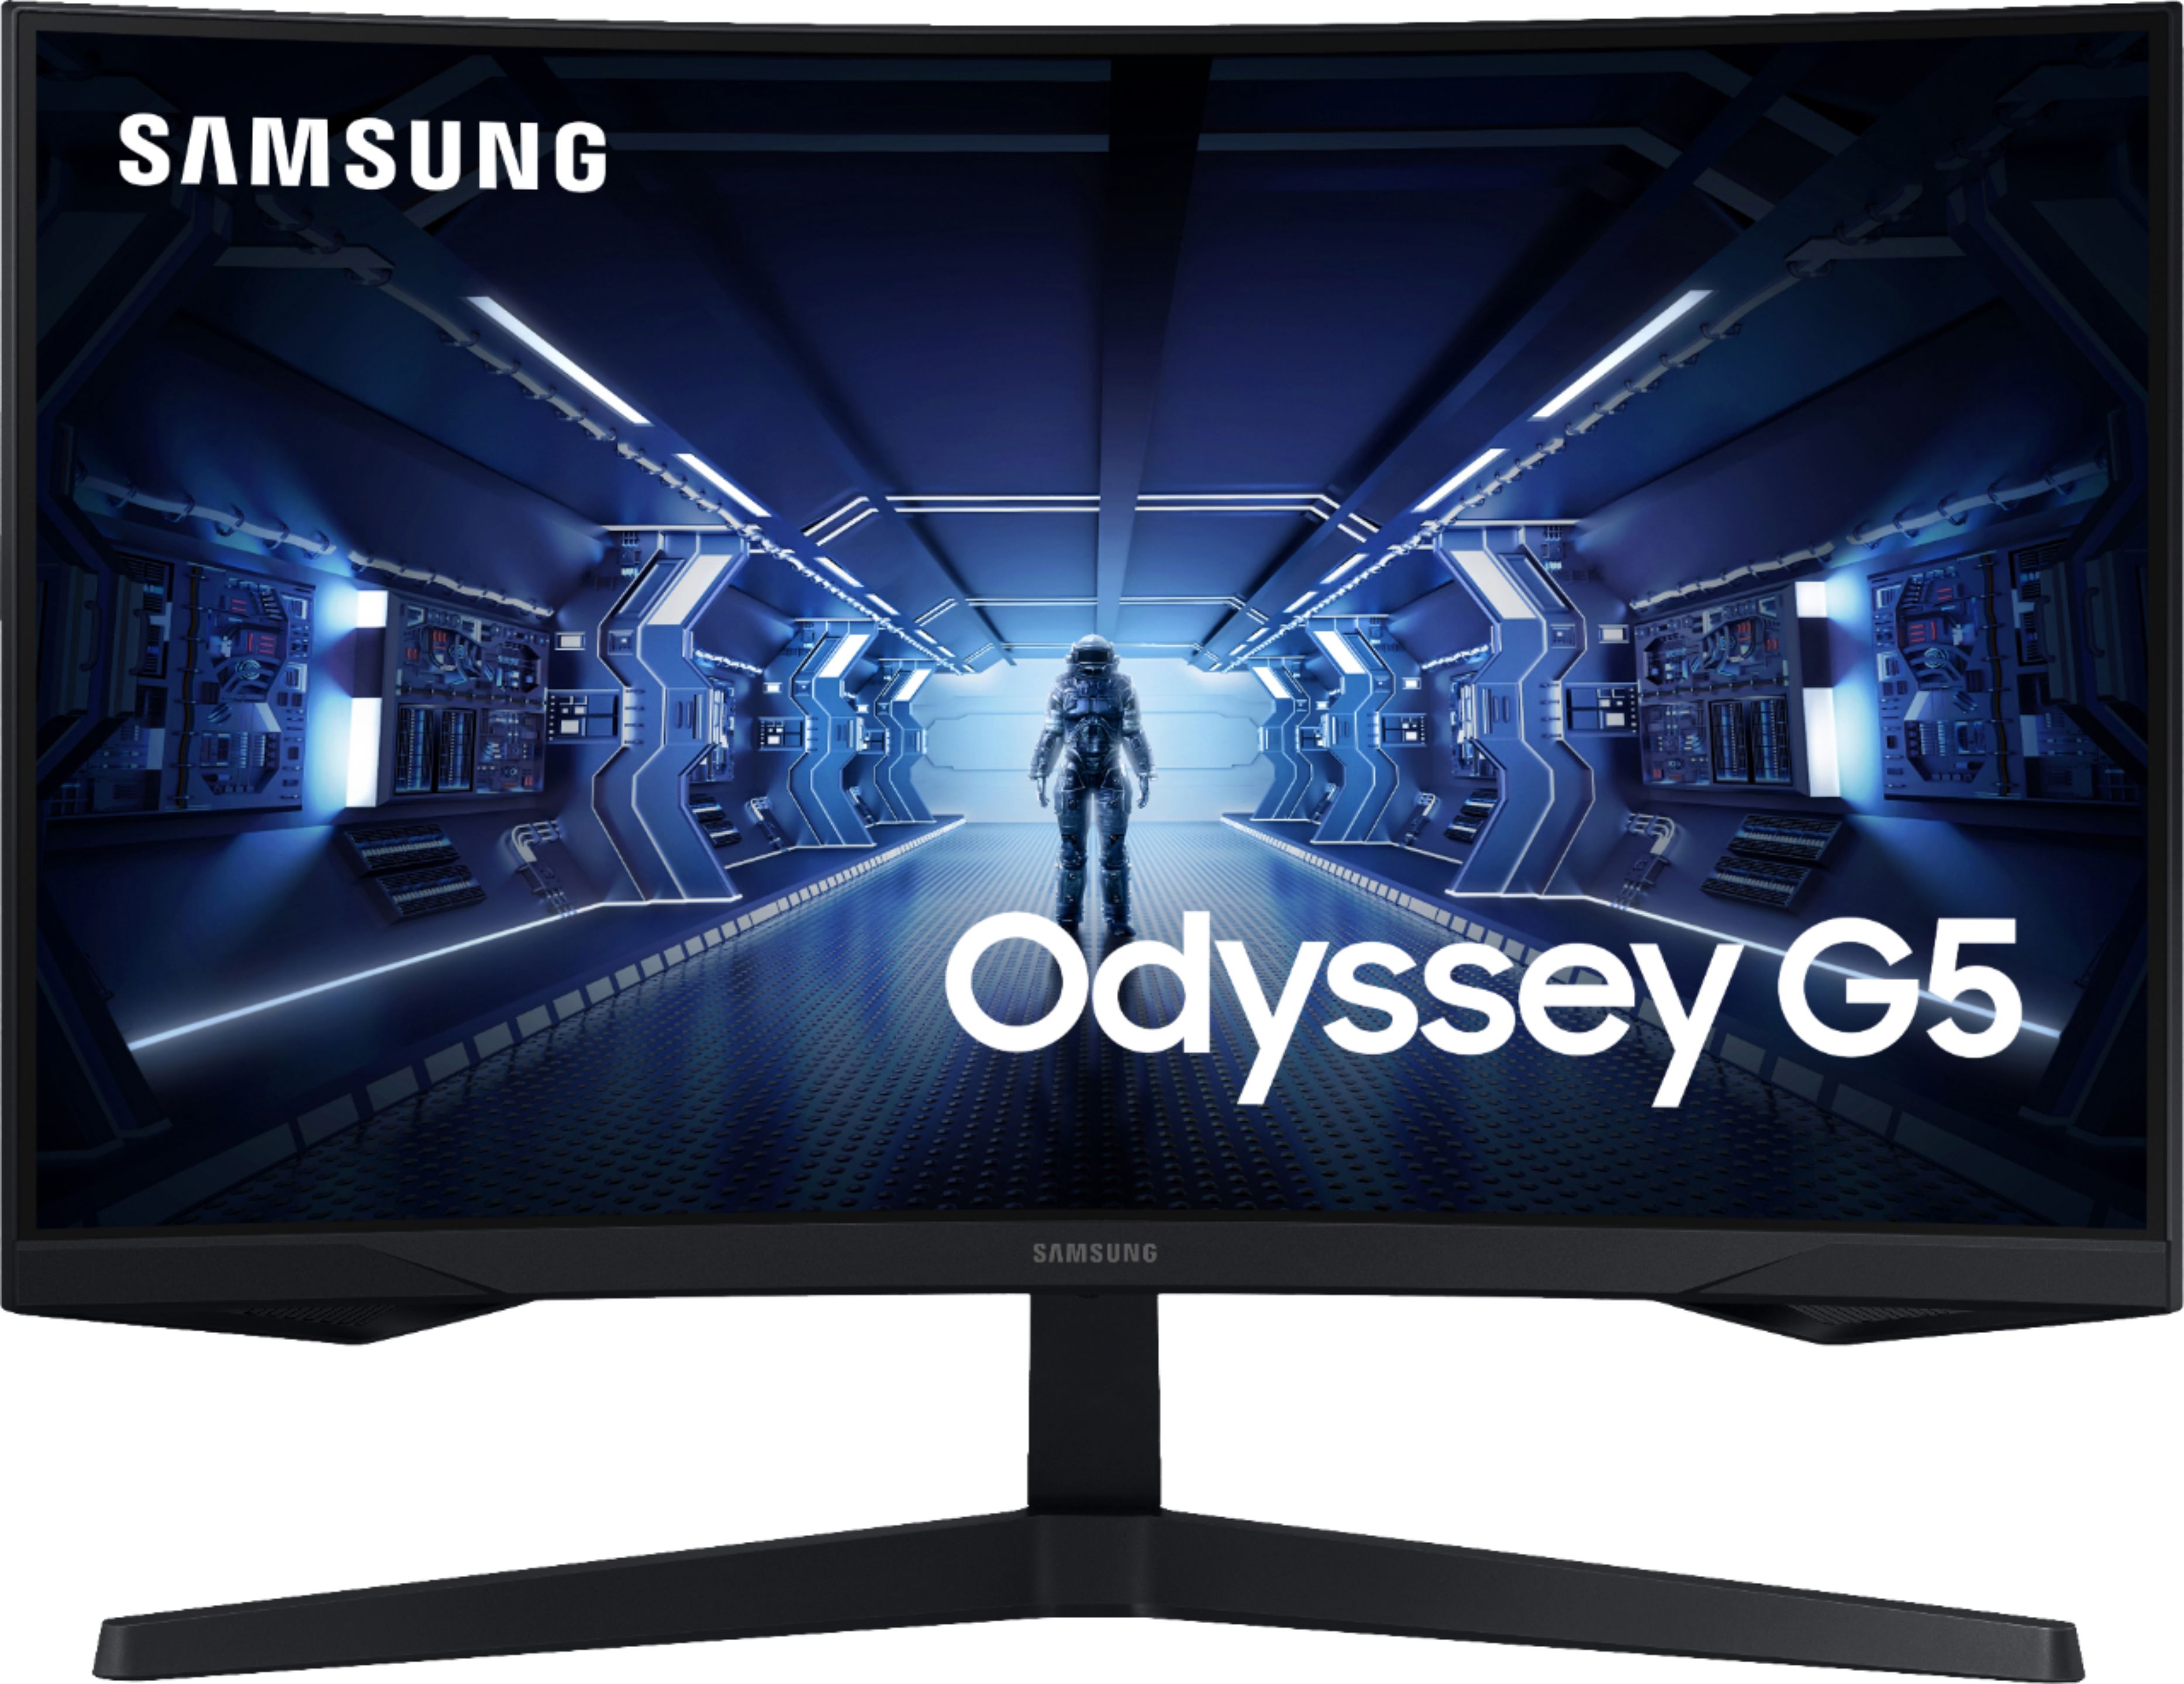 Samsung Odyssey G5 27" LED Curved WQHD FreeSync Monitor HDR (HDMI) Black LC27G55TQWNXZA - Best